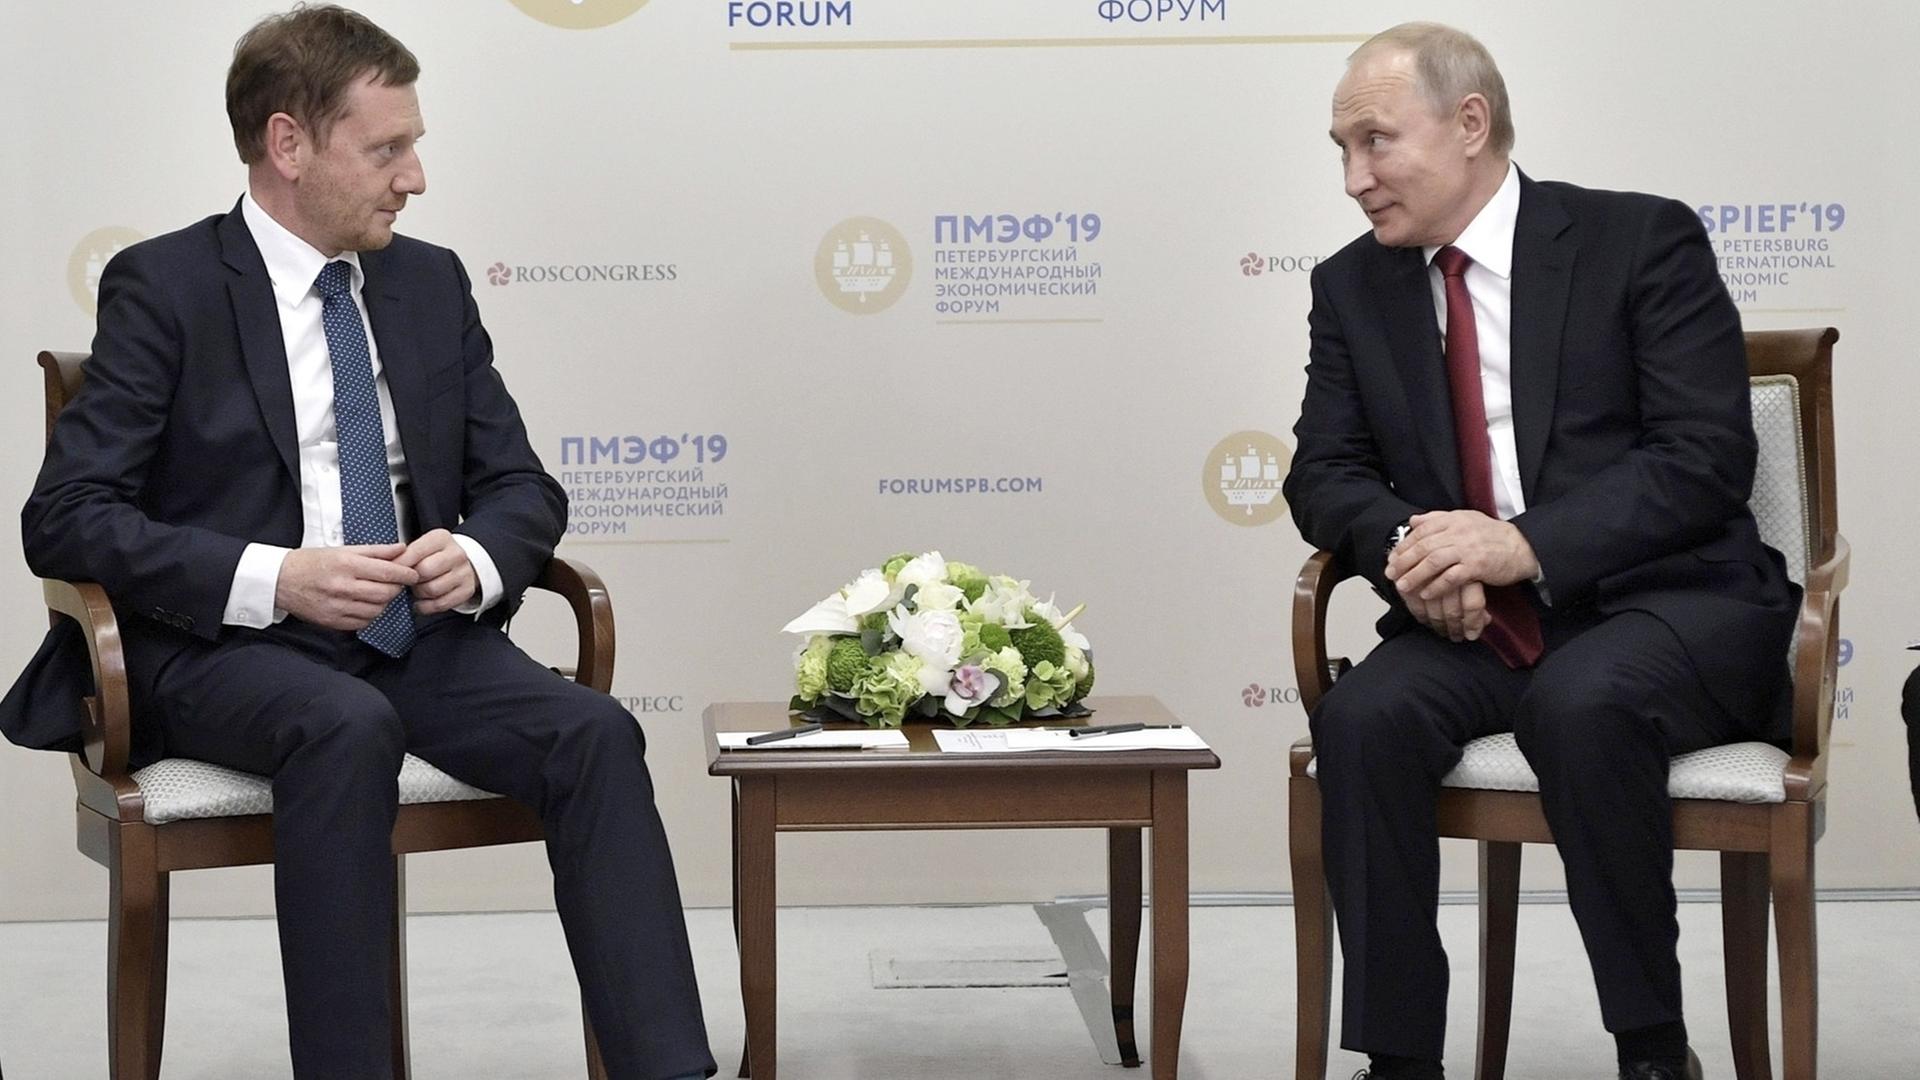 Der russische Präsident Wladimir Putin (rechts) spricht beim Internationalen Wirtschaftsforum in St. Petersburg mit Michael Kretschmer (CDU), Ministerpräsident von Sachsen.